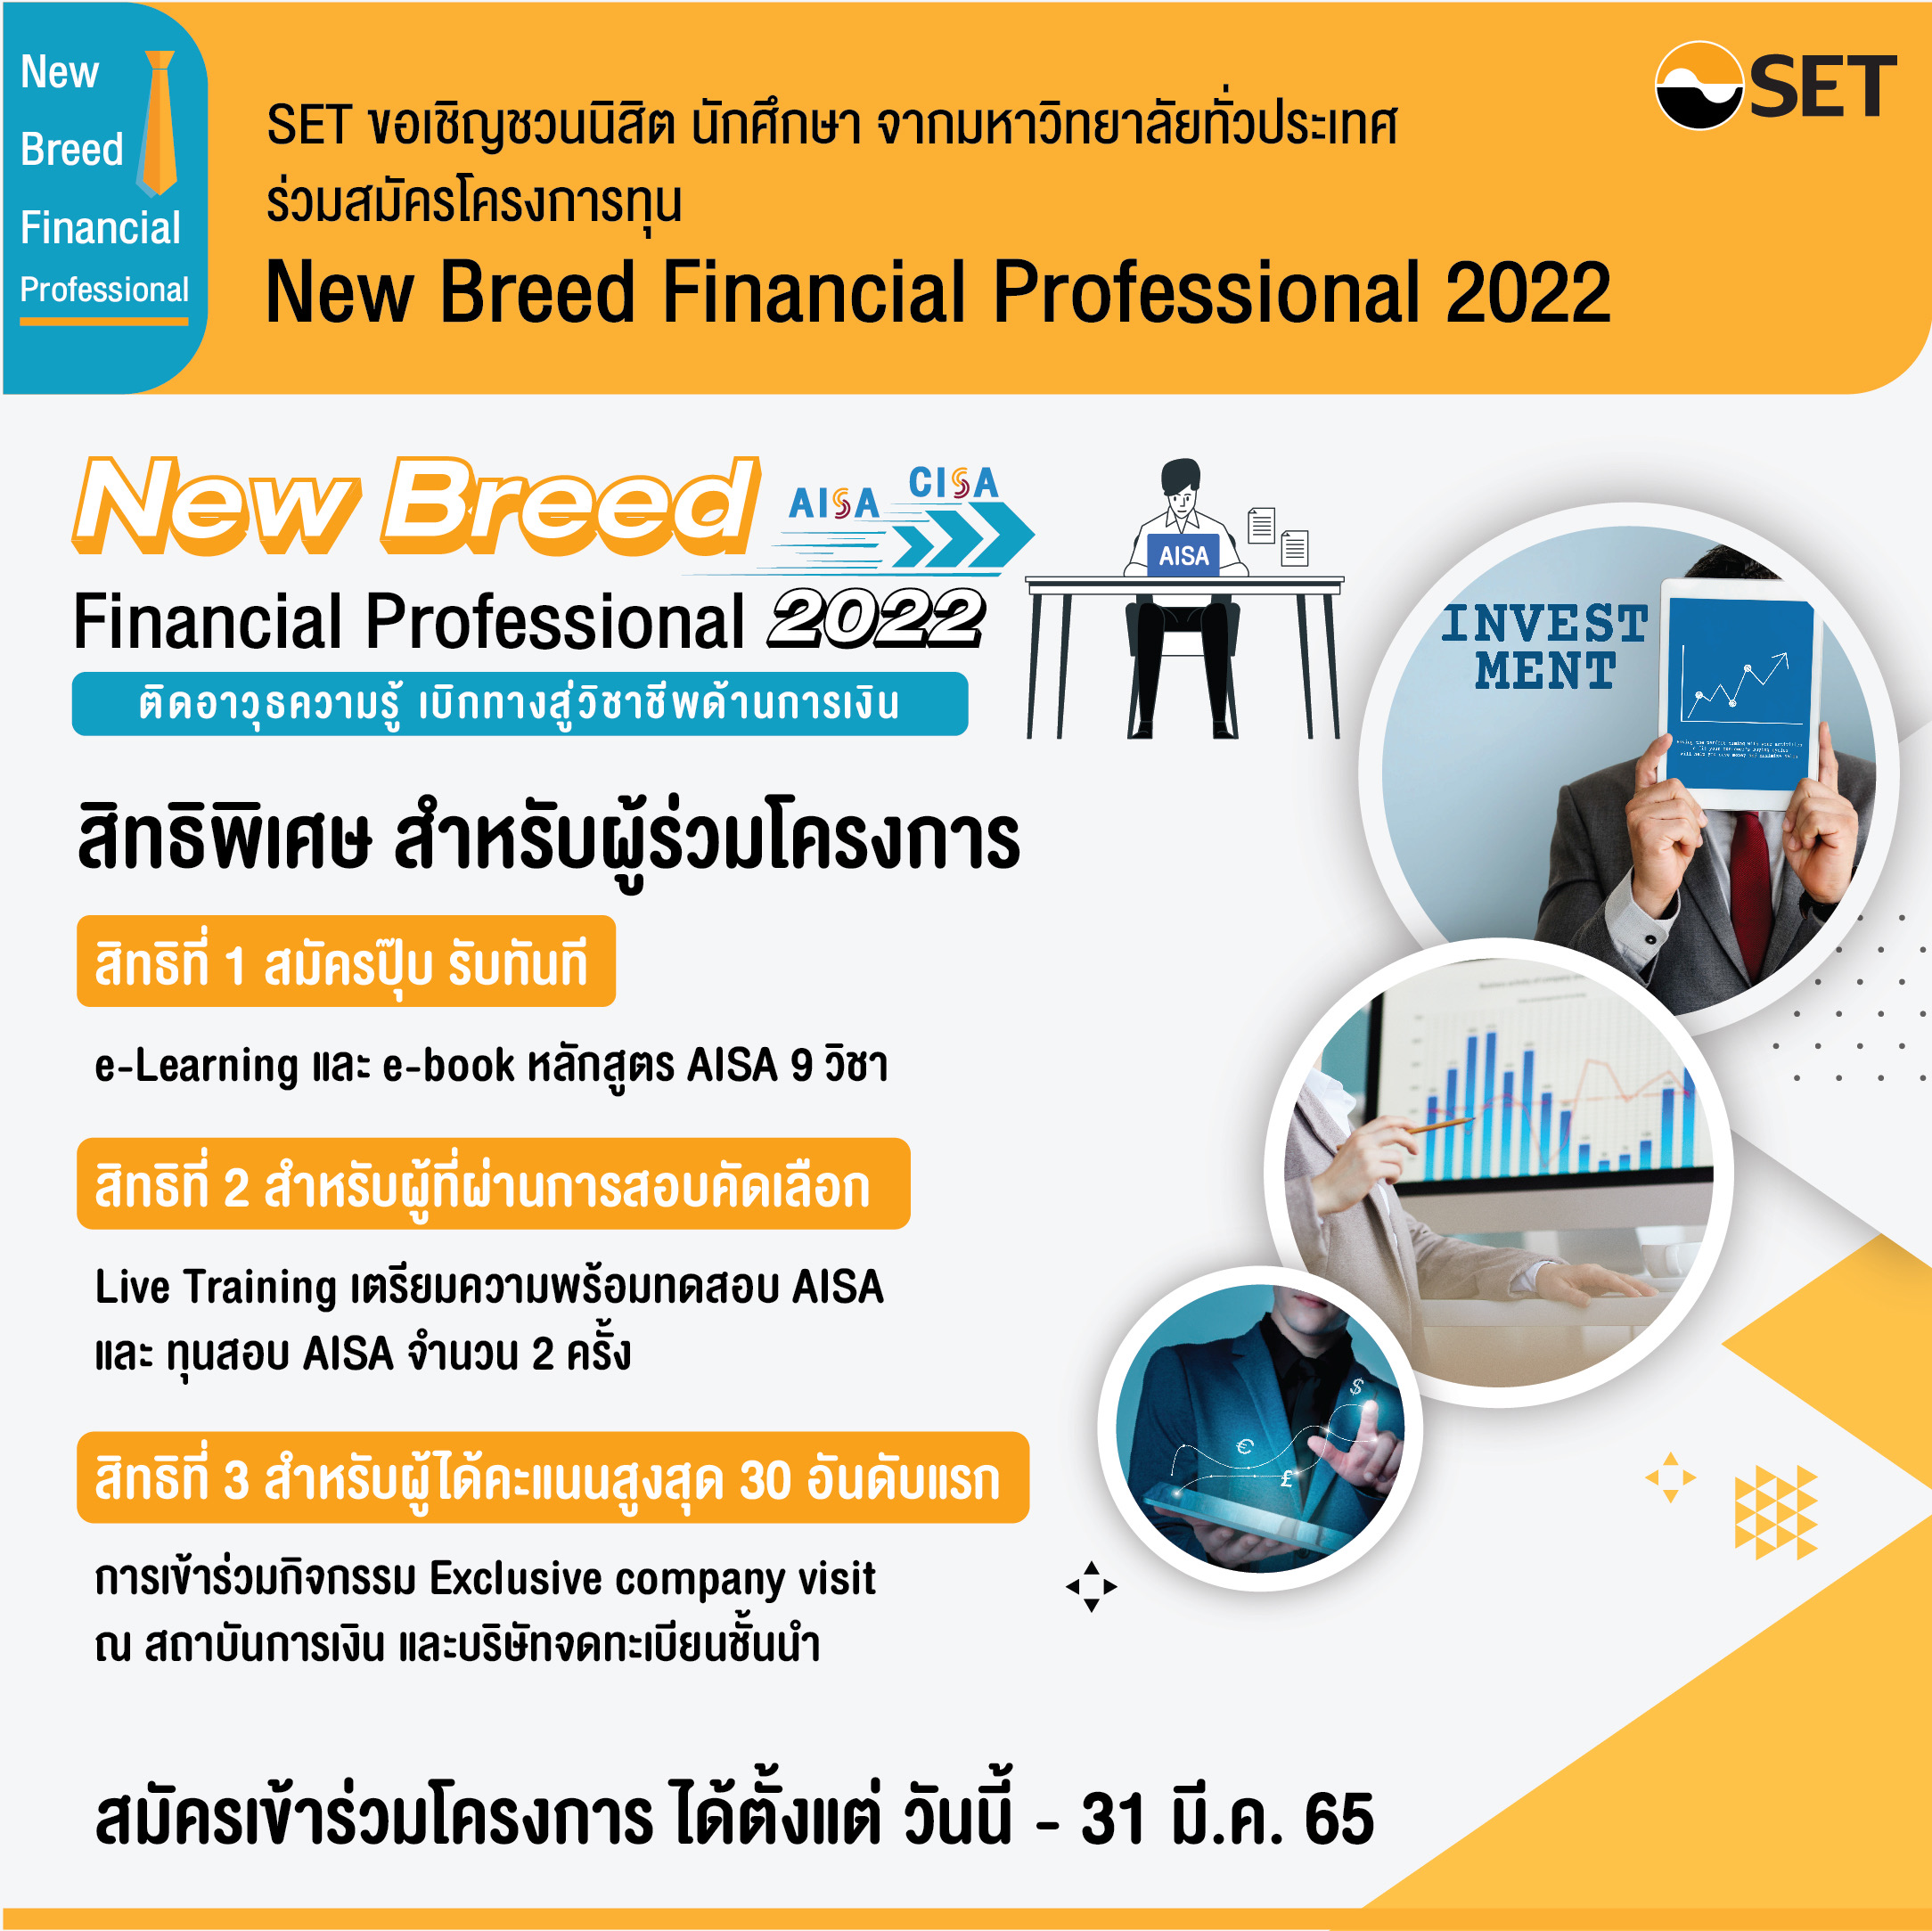 ตลาดหลักทรัพย์ฯ ชวนนิสิตนักศึกษาร่วมโครงการ “New Breed Financial Professional 2022”